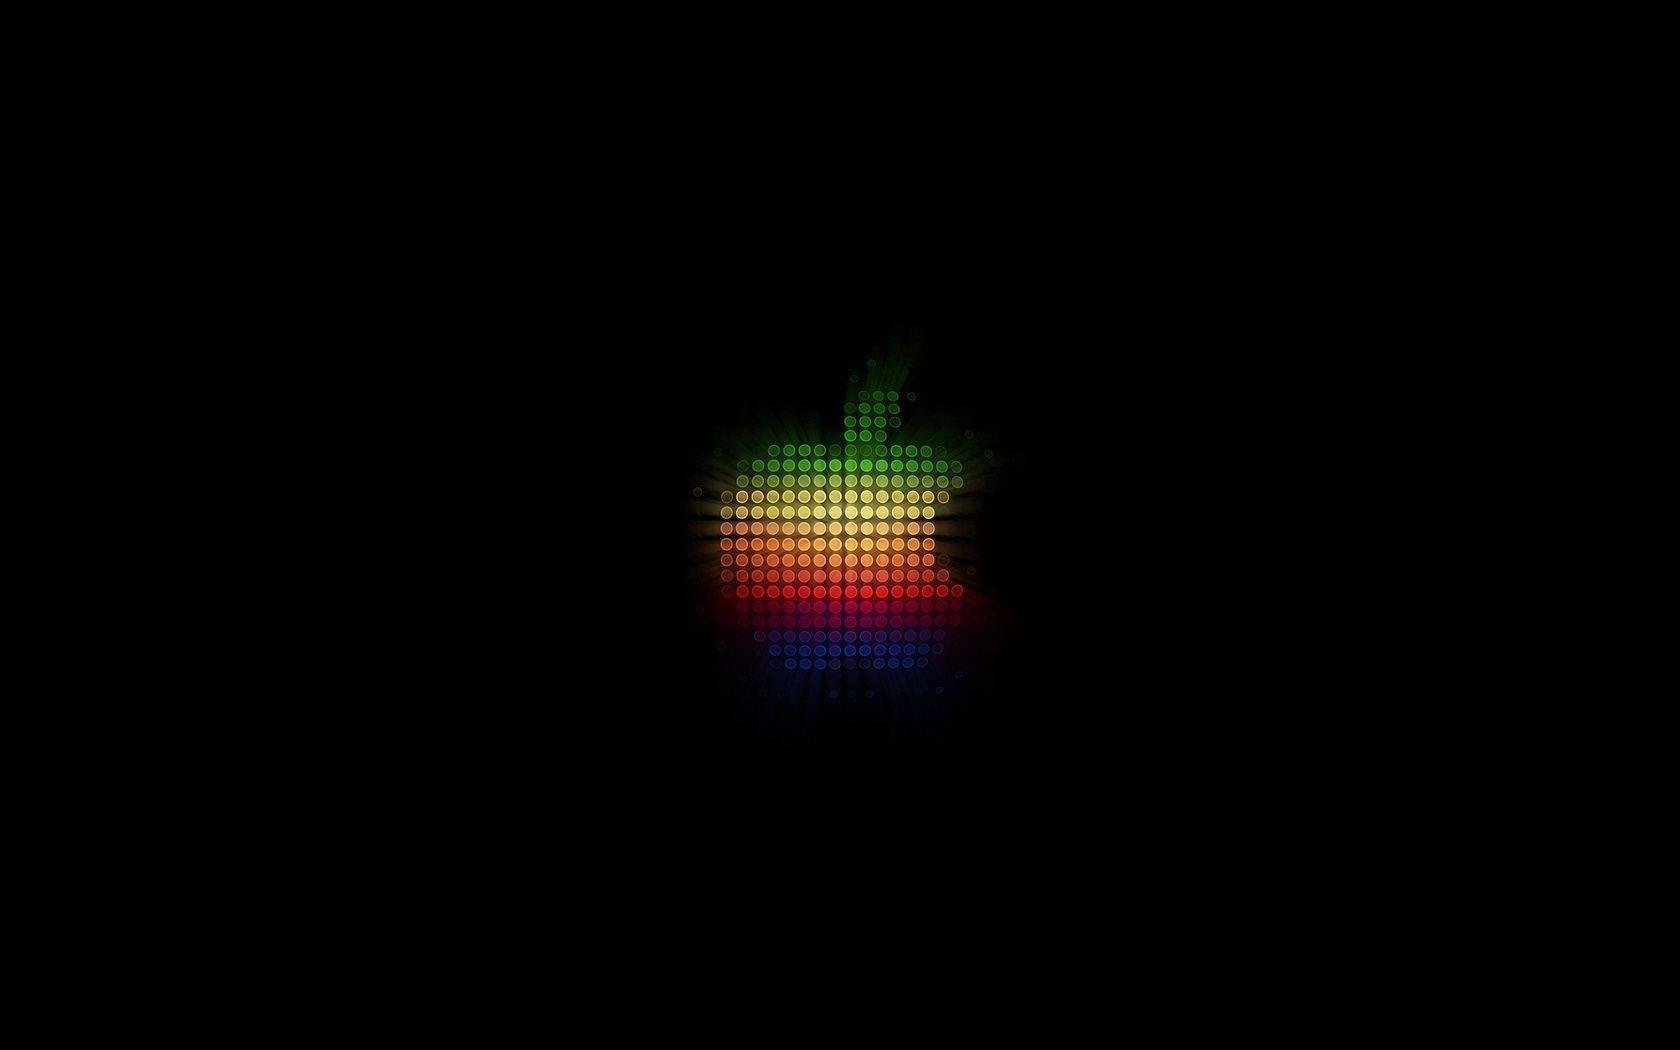 Ultra Luminous Apple Mac Logo Hd Desktop Wallpapers